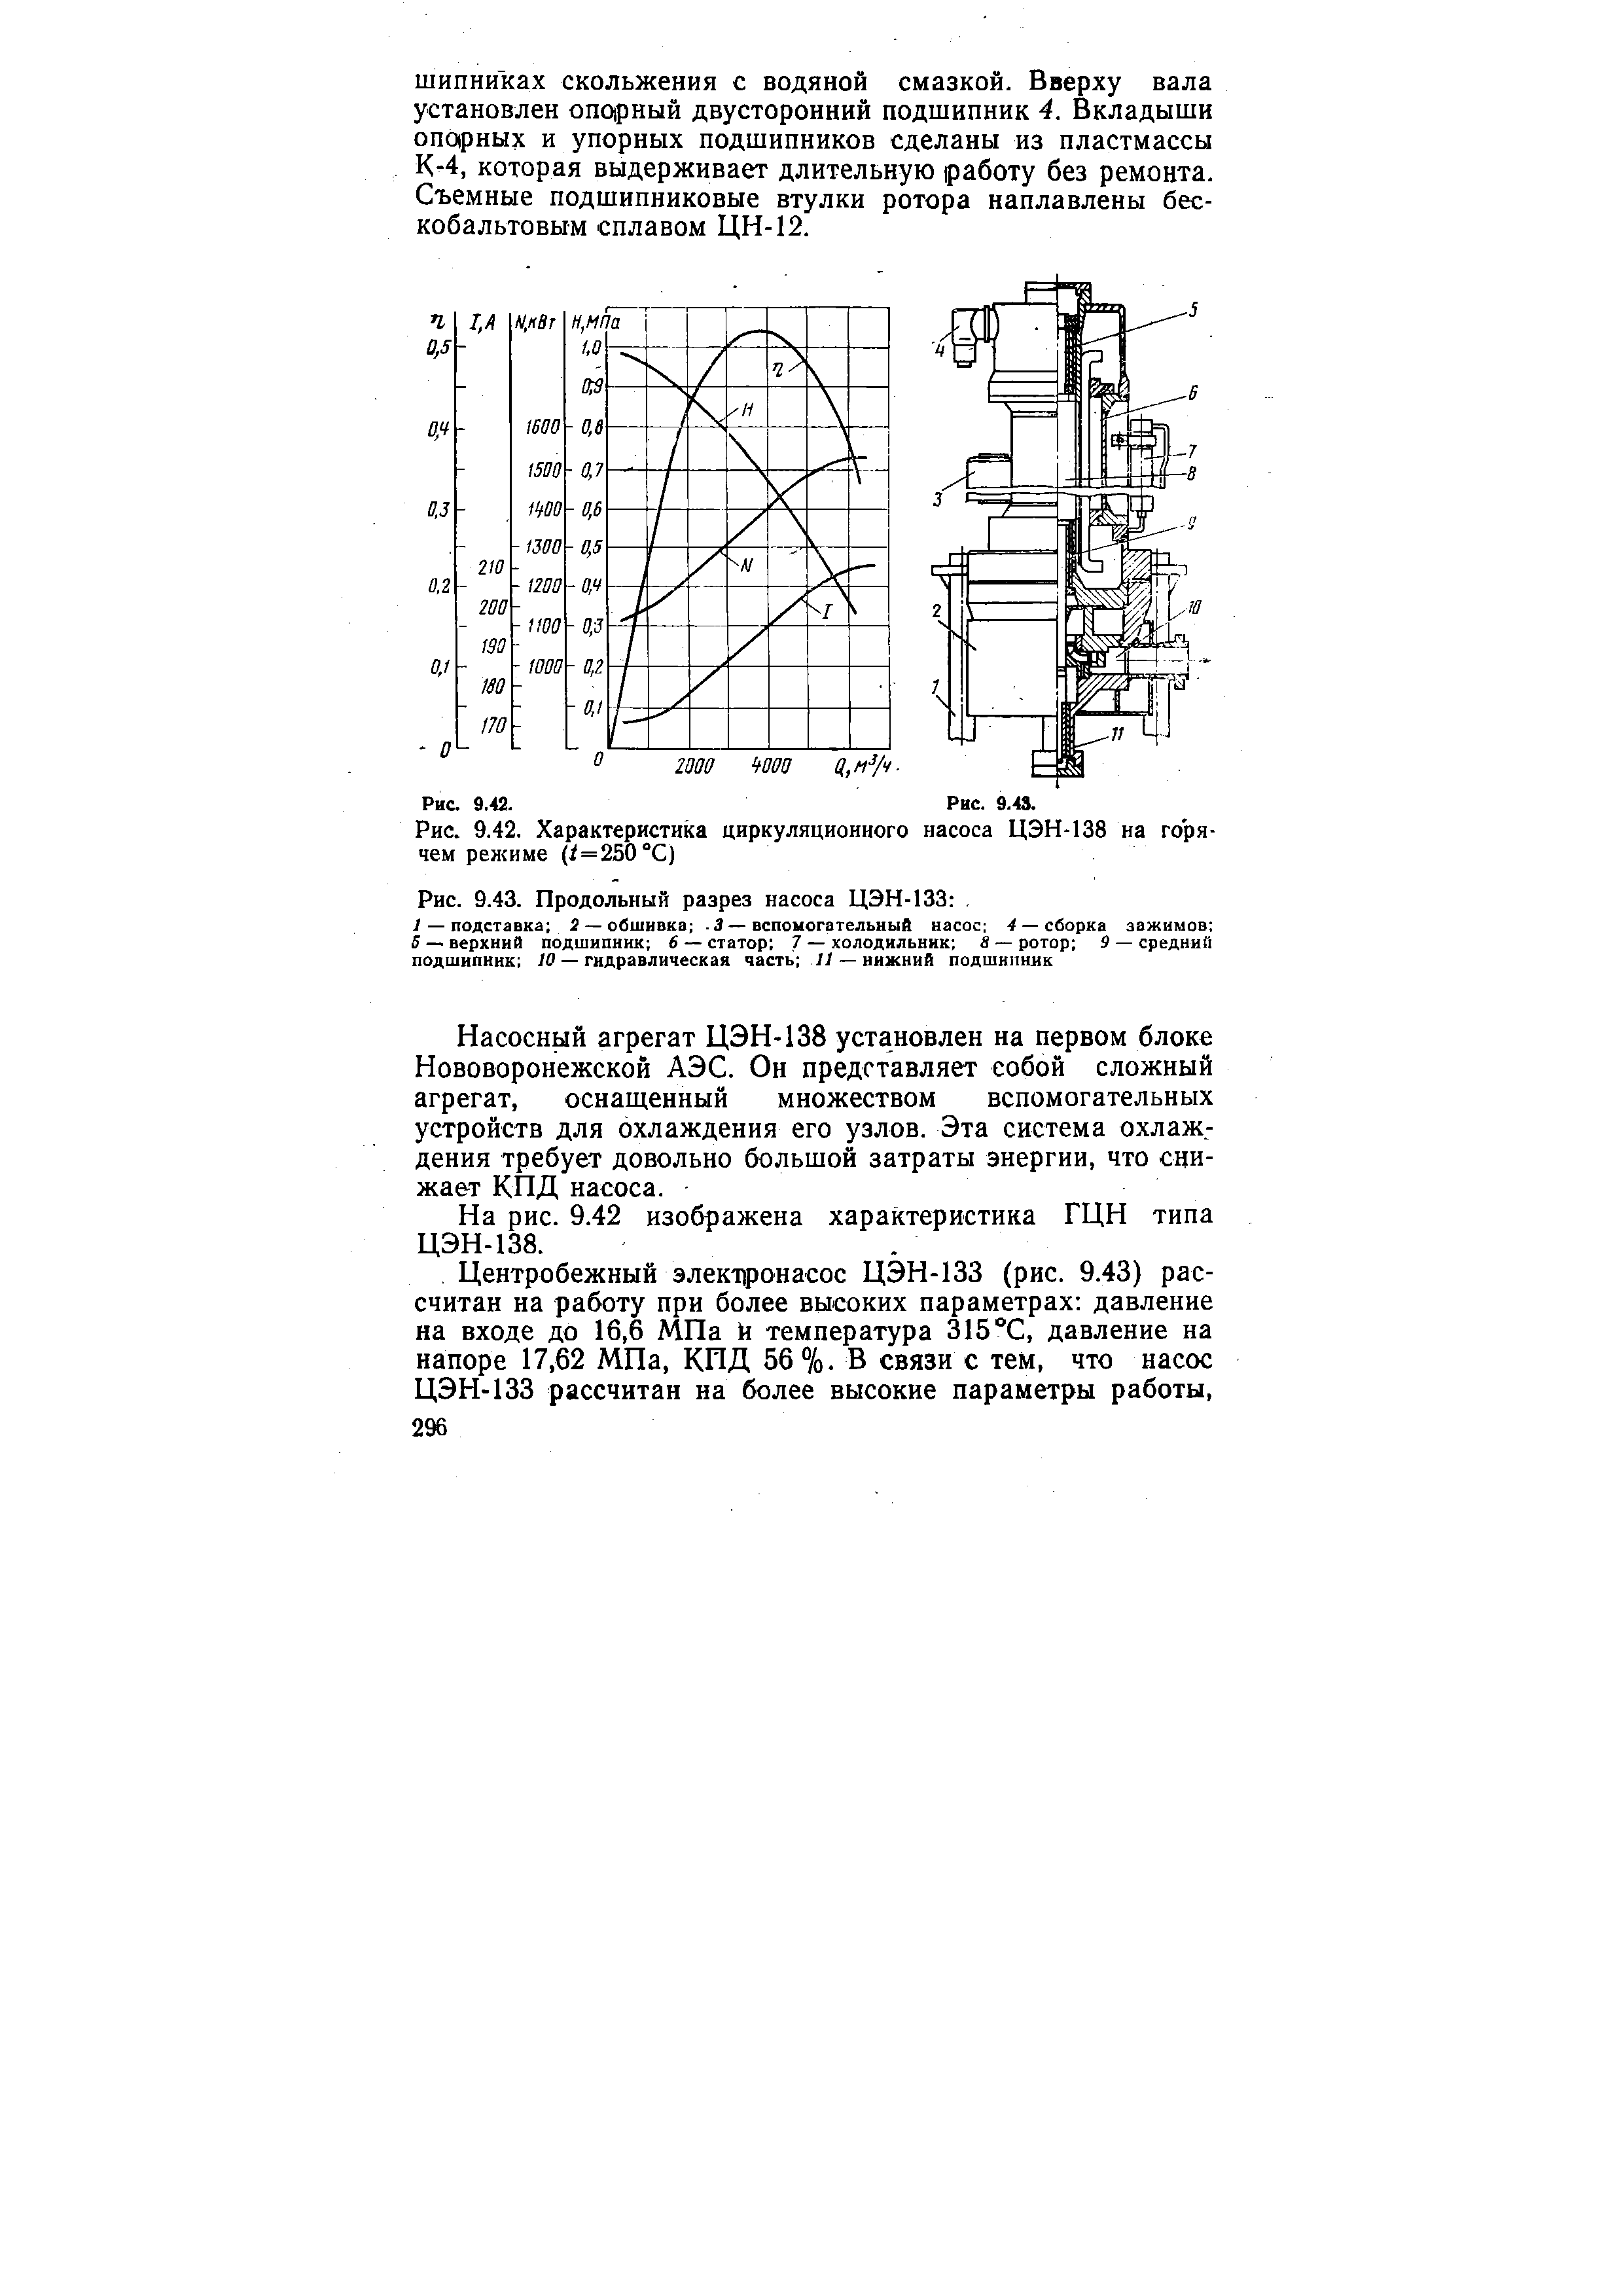 Рис. 9.42. Характеристика циркуляционного насоса ЦЭН-138 на горячем режиме ( =250°С)
